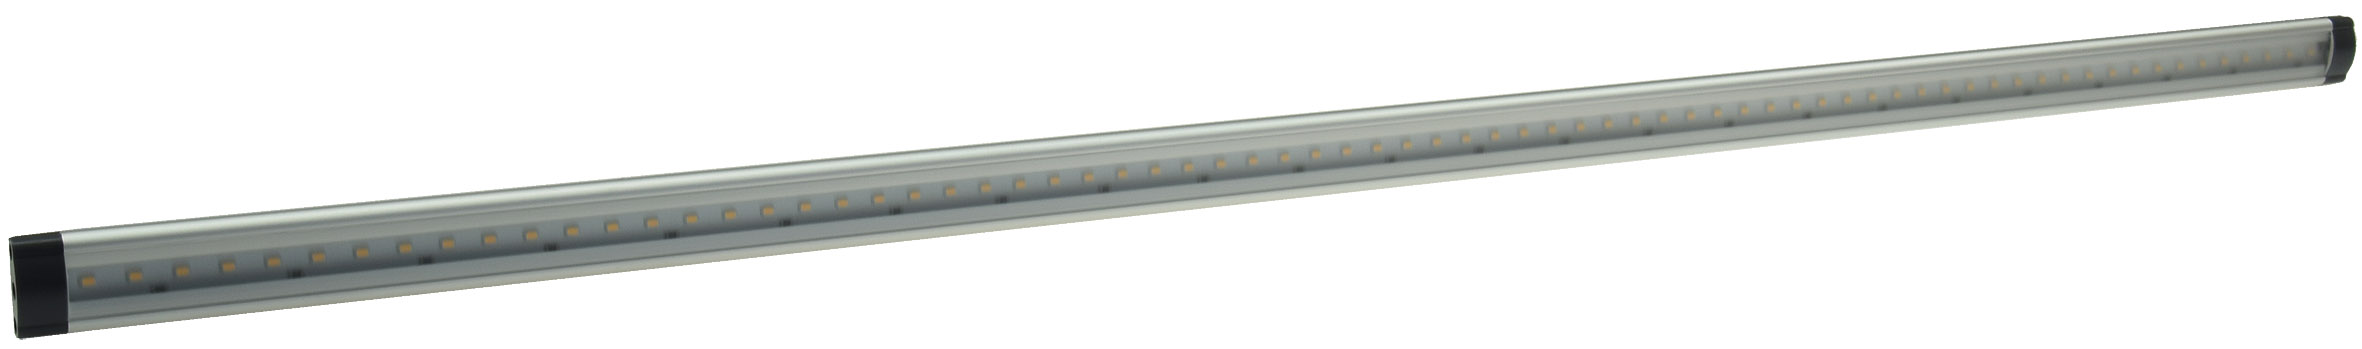 LED Unterbauleuchte "CT-FL80" 80cm 660lm warmweiß Lichtleiste Leuchte Lampe 12V